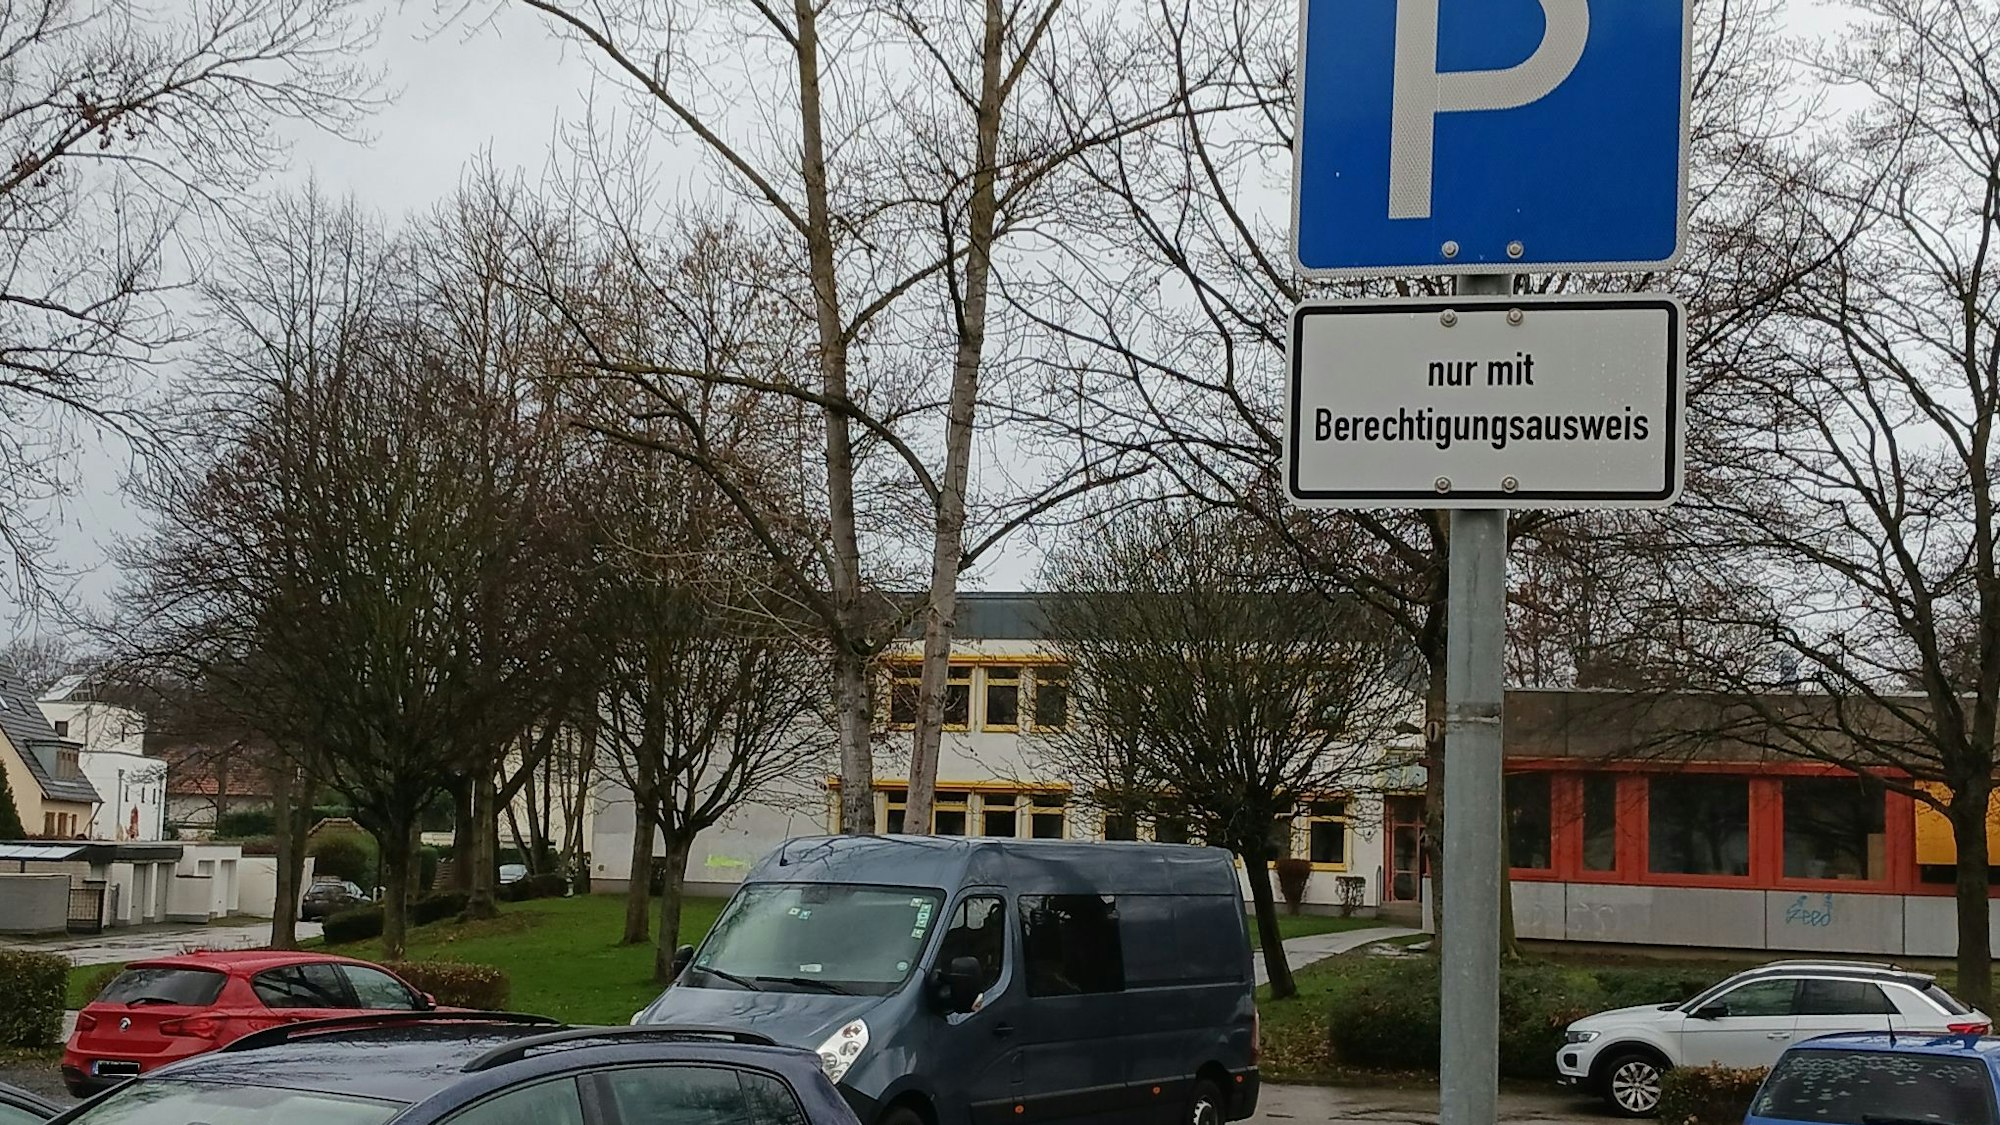 Einige Fahrzeuge parken auf einem asphaltierten Platz, hinter dem kahle Bäume und das graue Flachdachgebäude des Schulzentrums Neuenhof stehen.